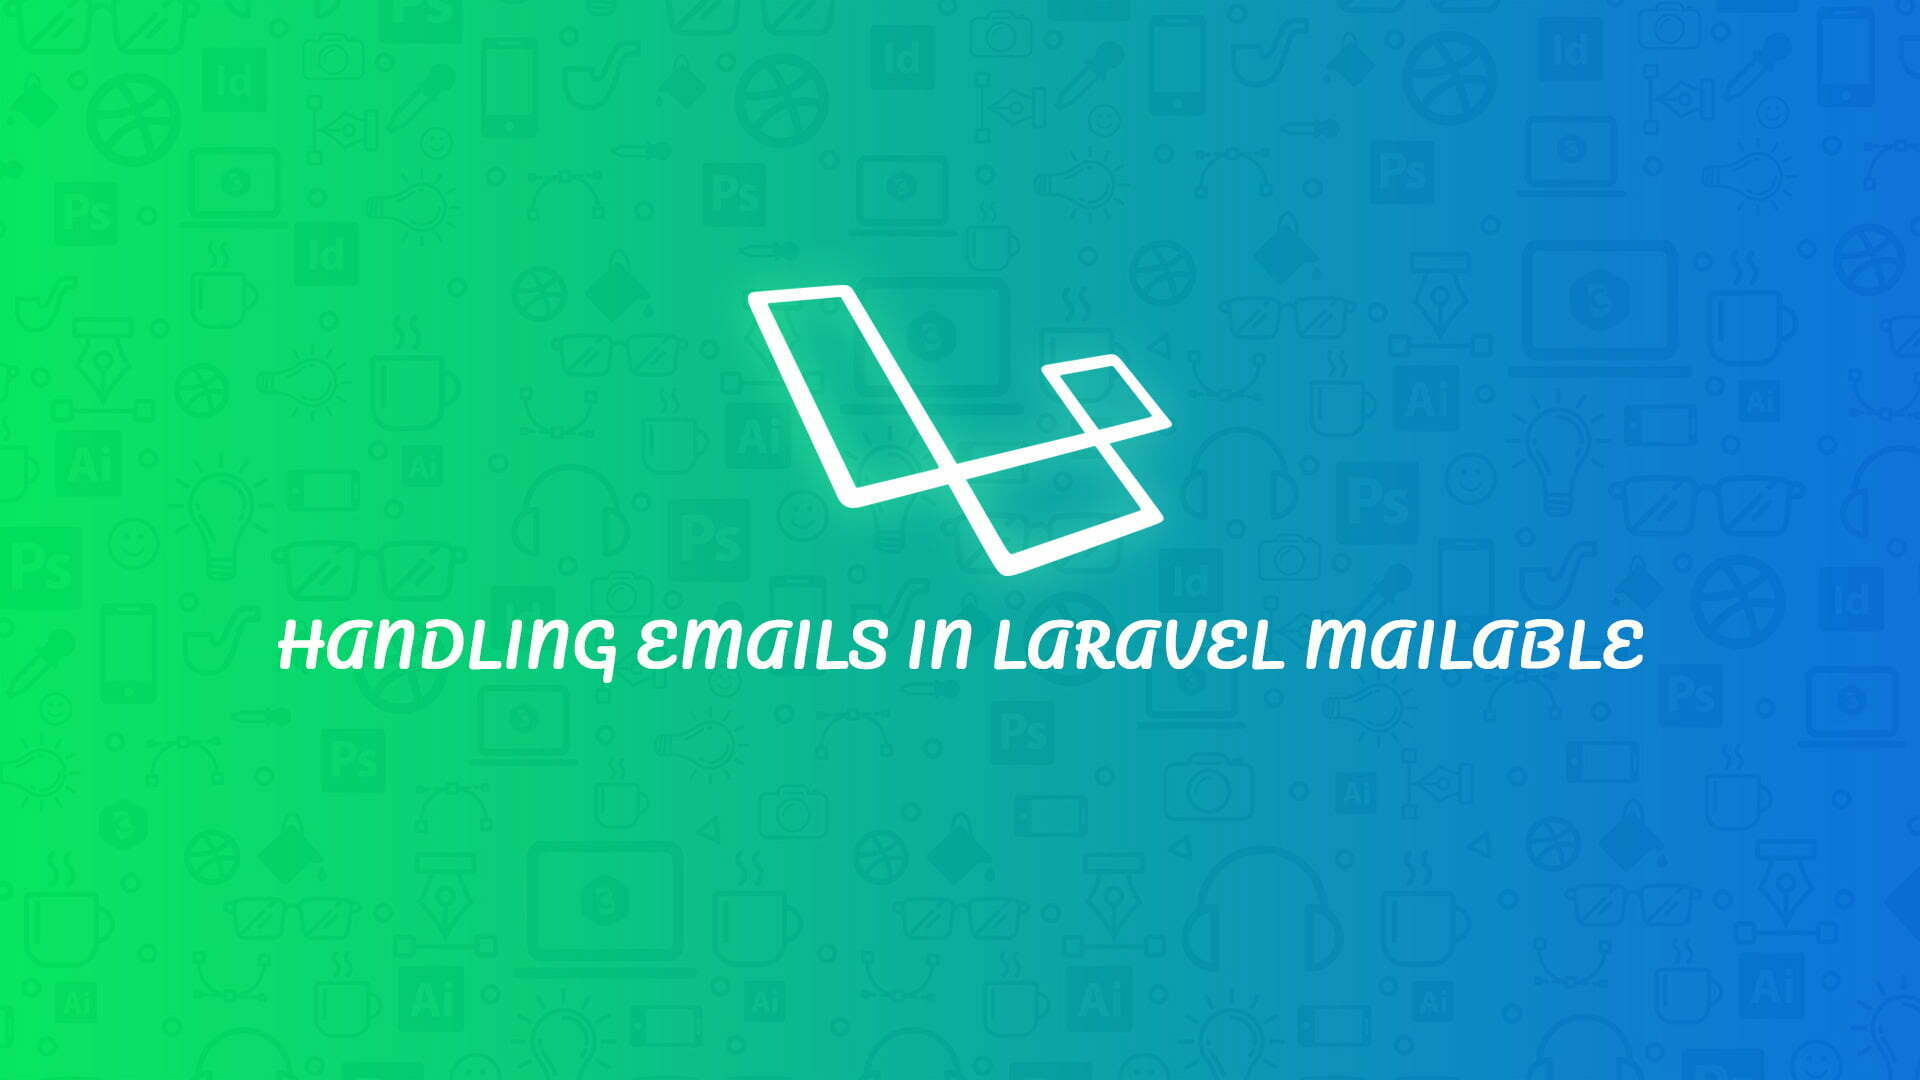 Laravel Mailable